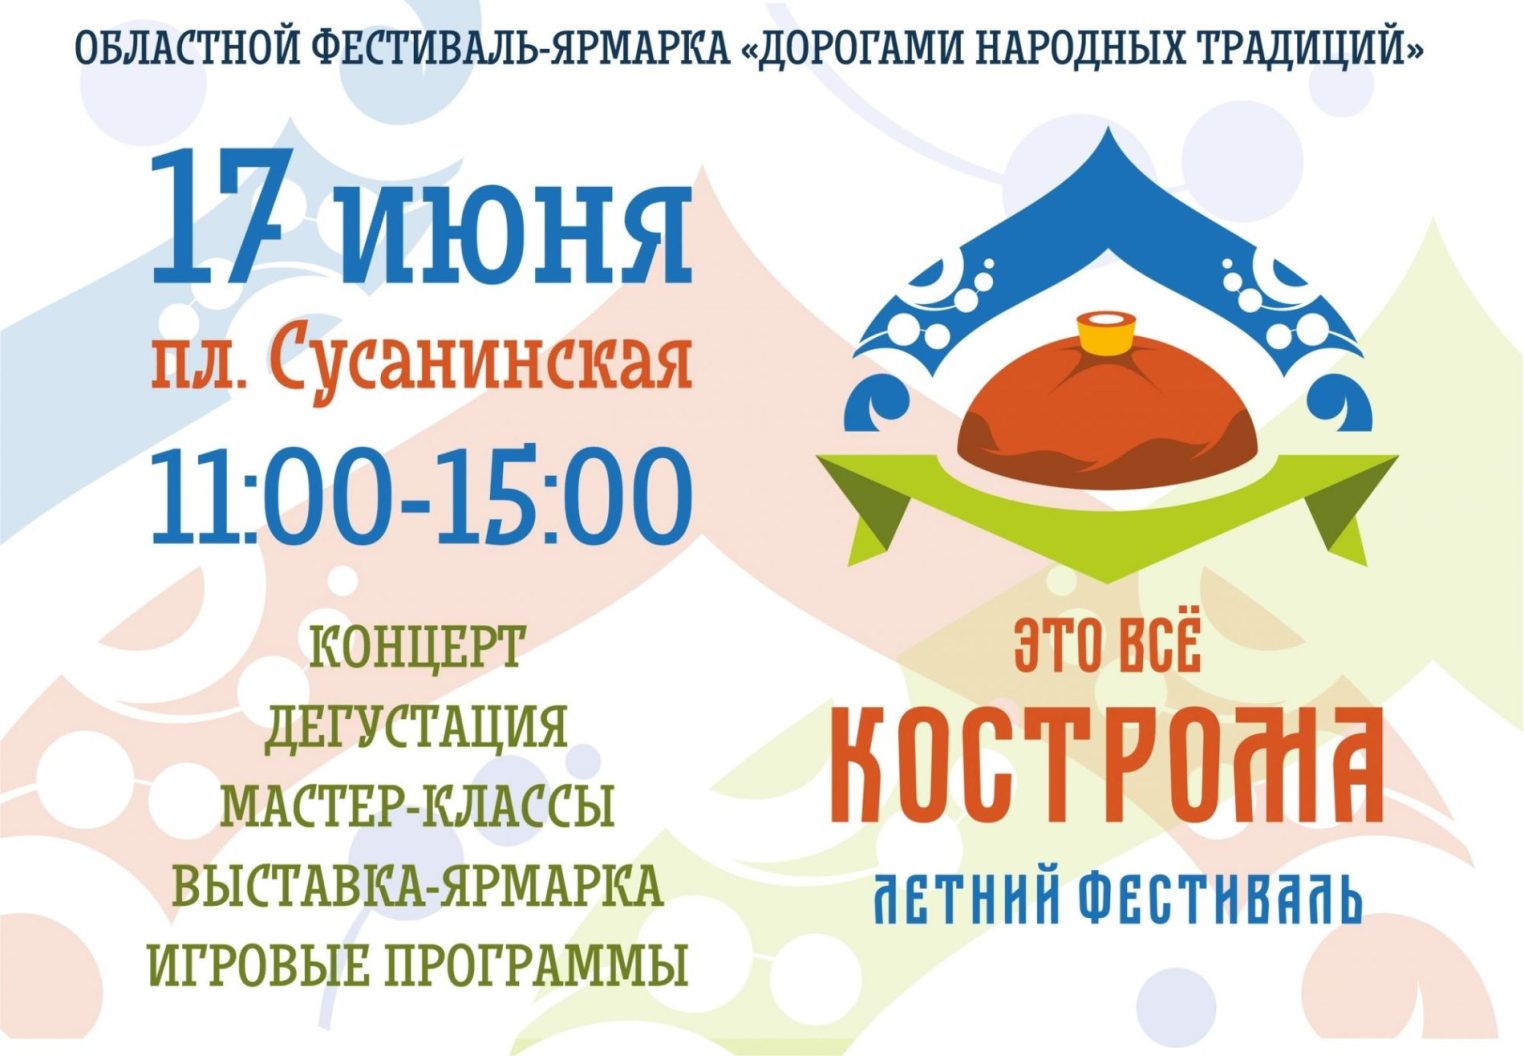 Фестиваль "Это всё Кострома" состоится на главной площади города